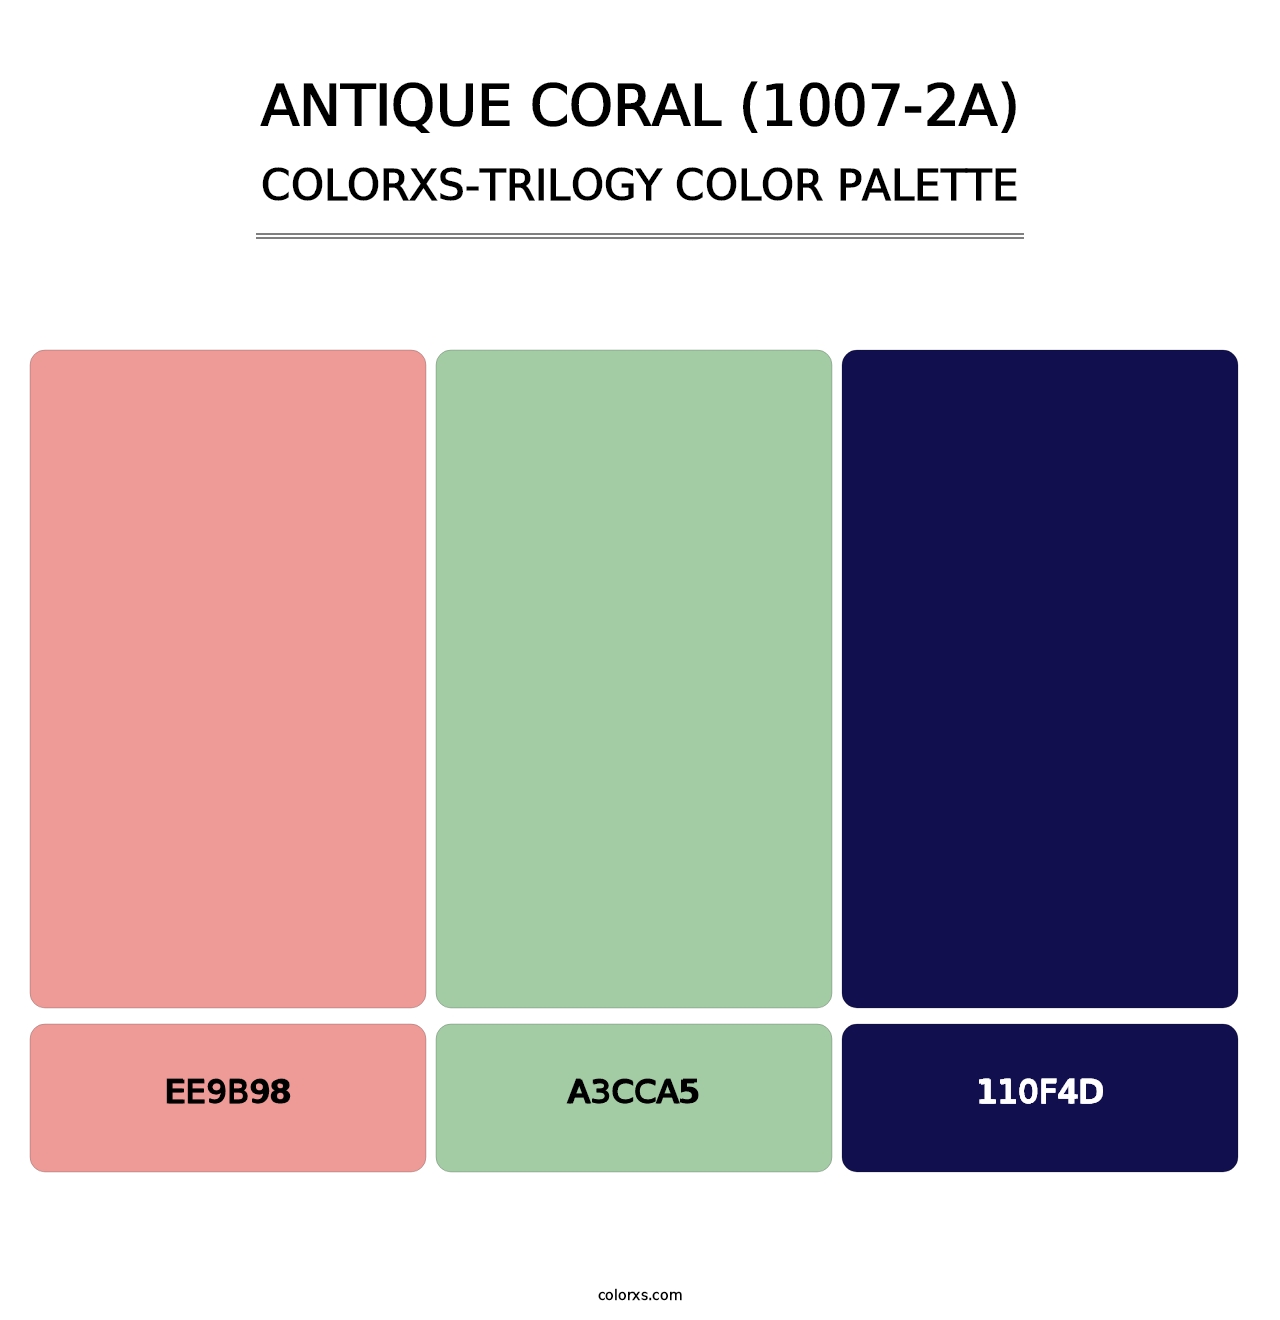 Antique Coral (1007-2A) - Colorxs Trilogy Palette